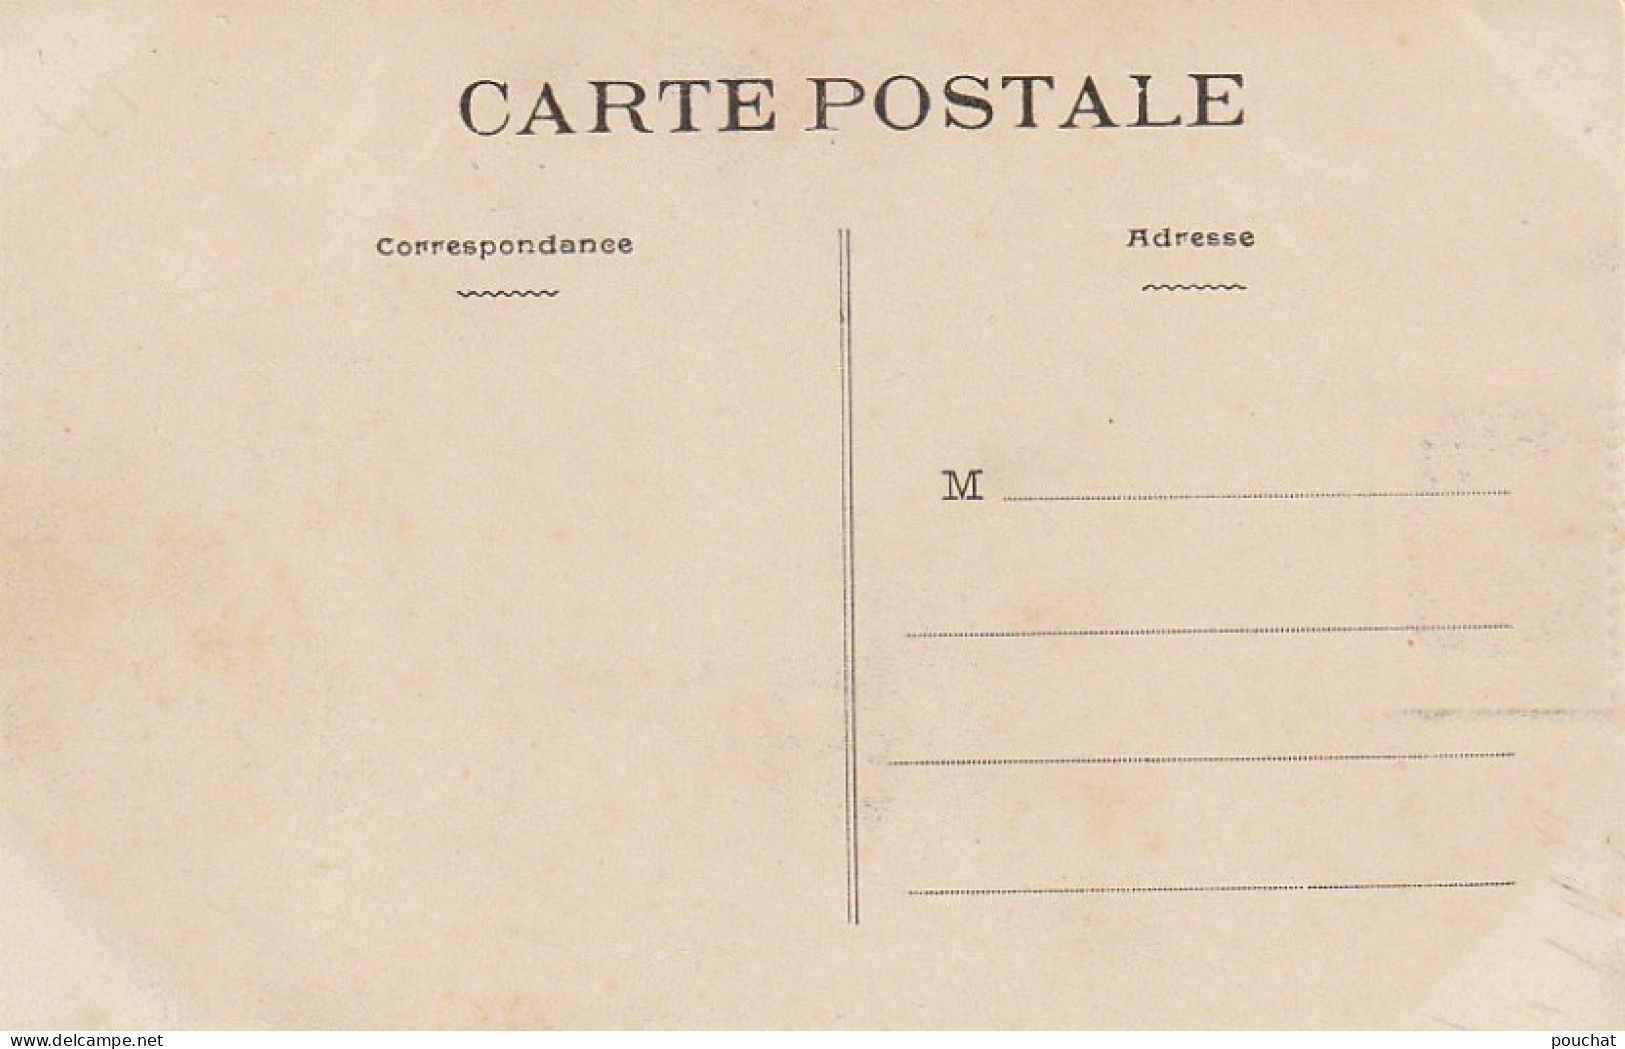 OP 23-(44) SOUVENIR DU VILLAGE BRETON ( NANTES 1910 ) - UN COIN DU BOURG - VIGNETTE -  2 SCANS - Pays De La Loire